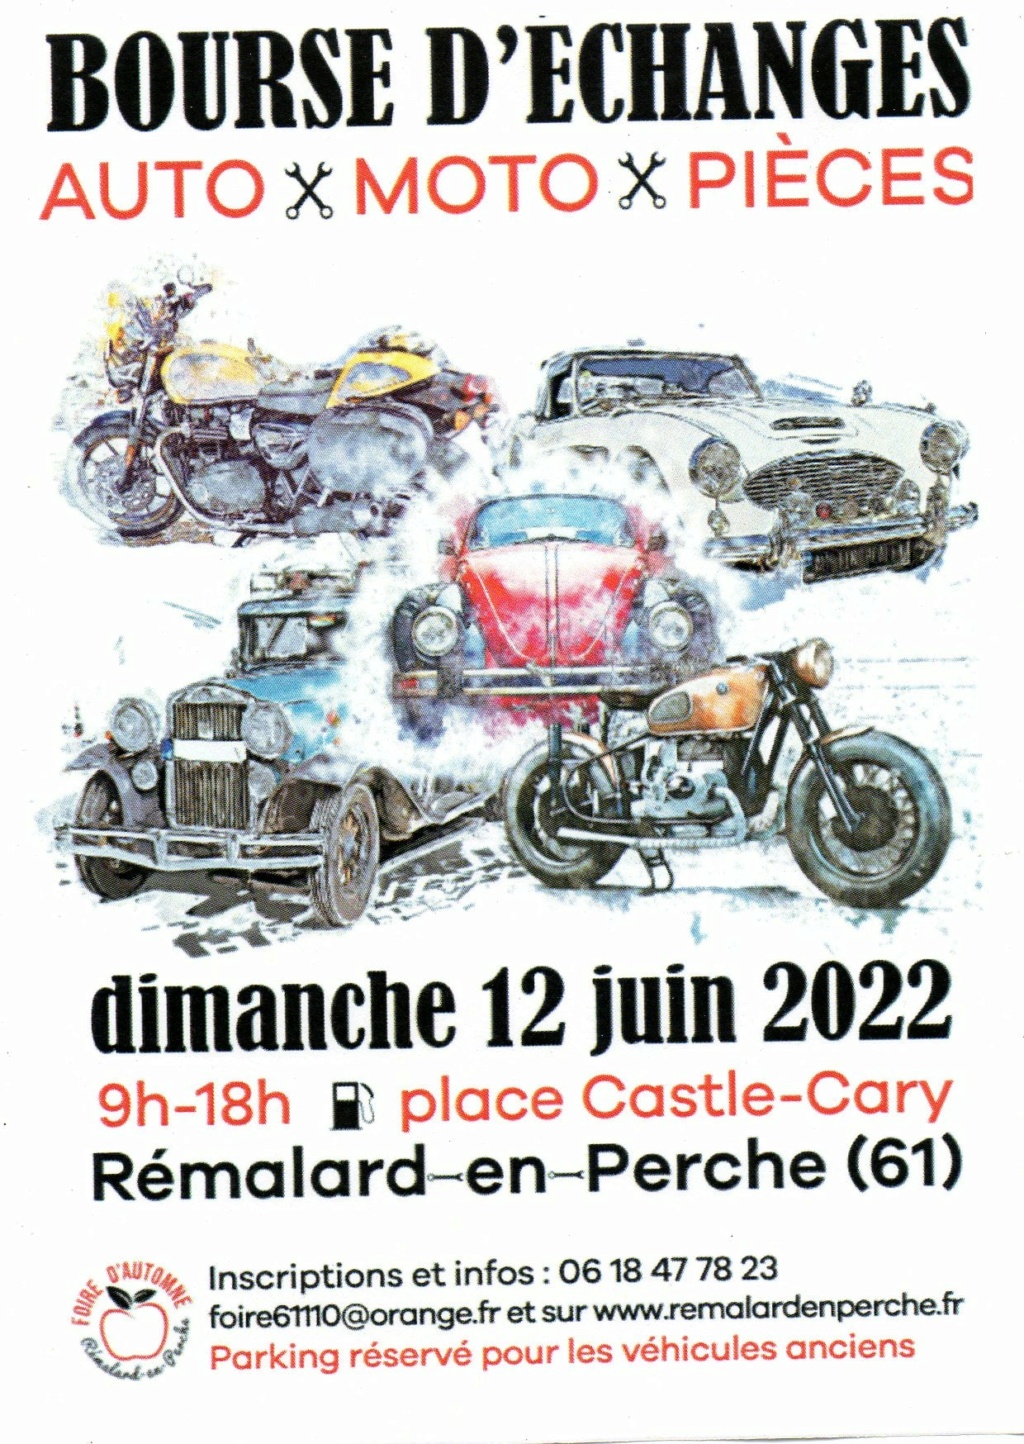 MANIFESTATION - Bourse D'échanges Auto Moto Pieces - 12 Juin 2022 - Rémalard-en-Perche (61)   27955310